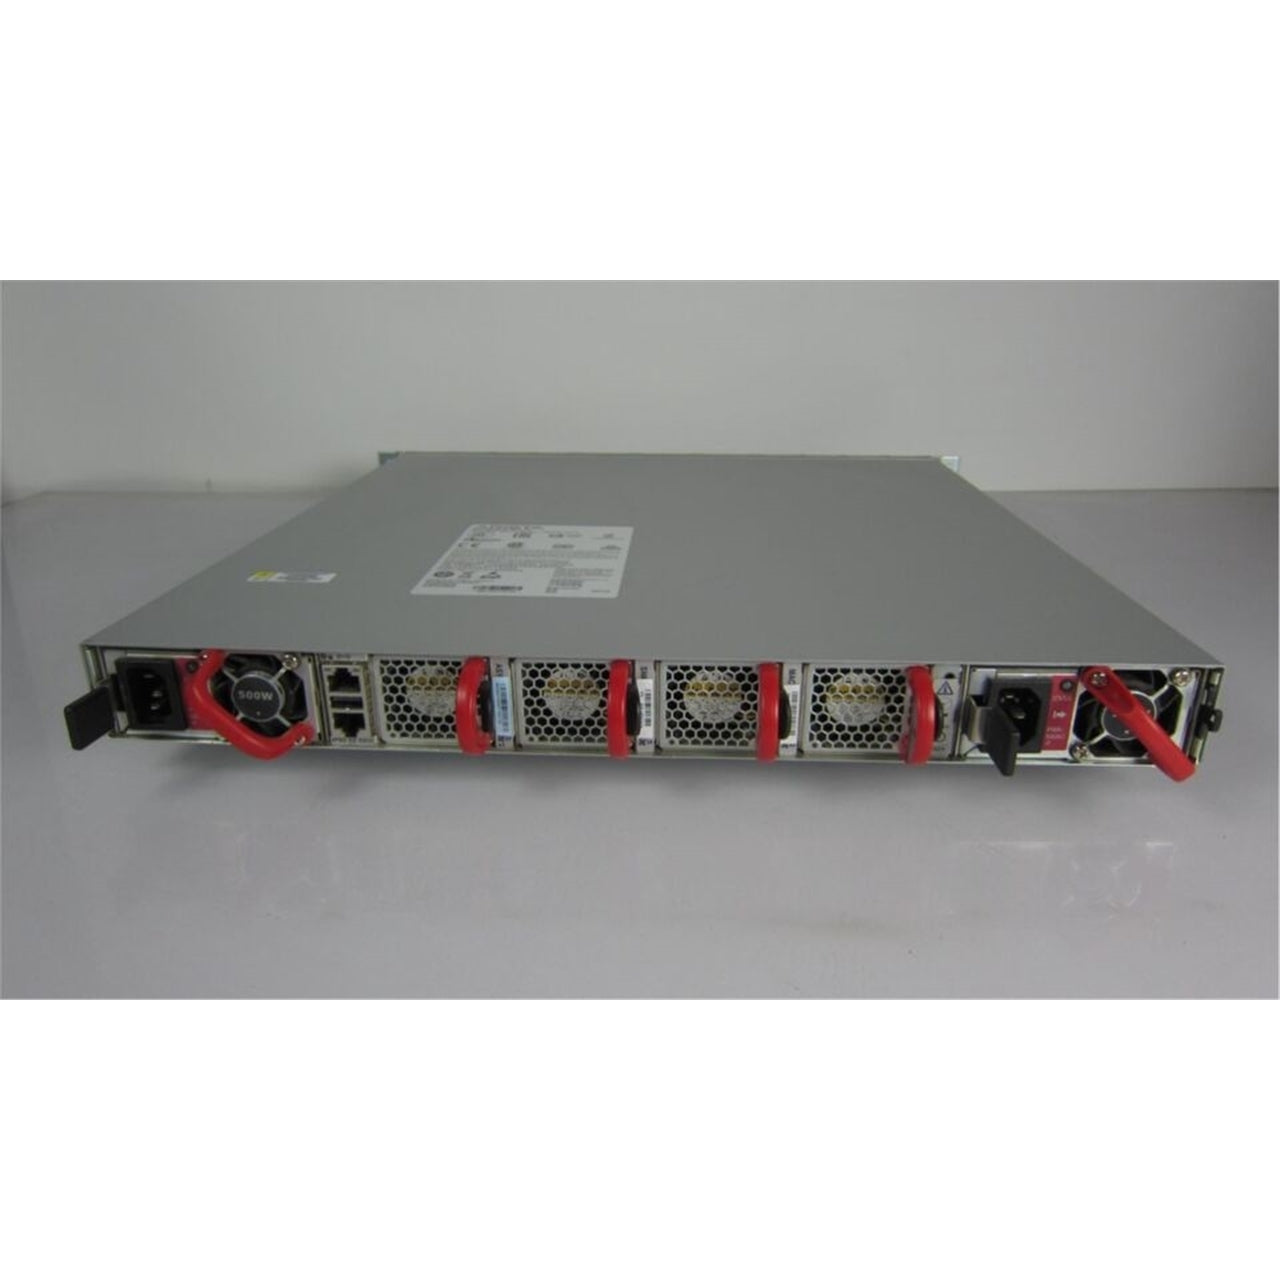 Arista DCS-7050SX3-48YC12-F 48x25GbE SFP & 12x100GbE switch (Used - Good)